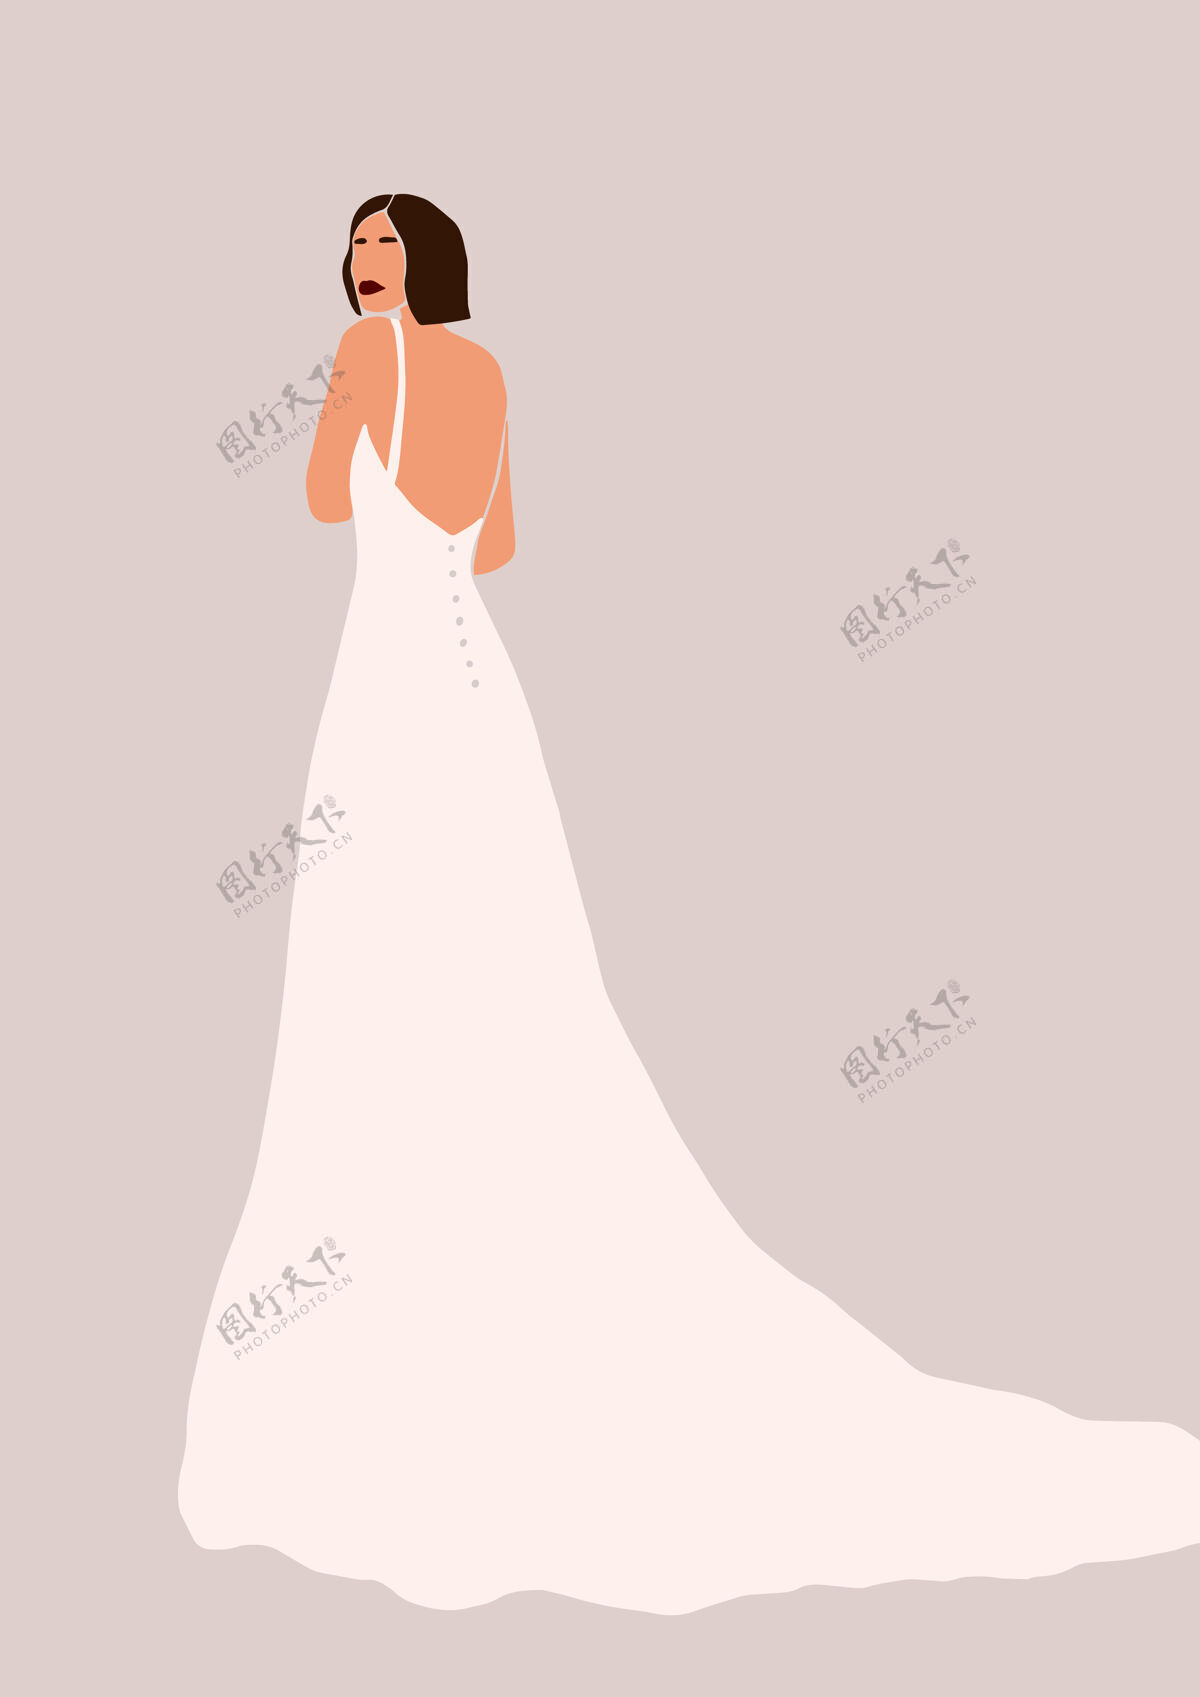 魅力穿婚纱的女人的插图衣服新娘优雅